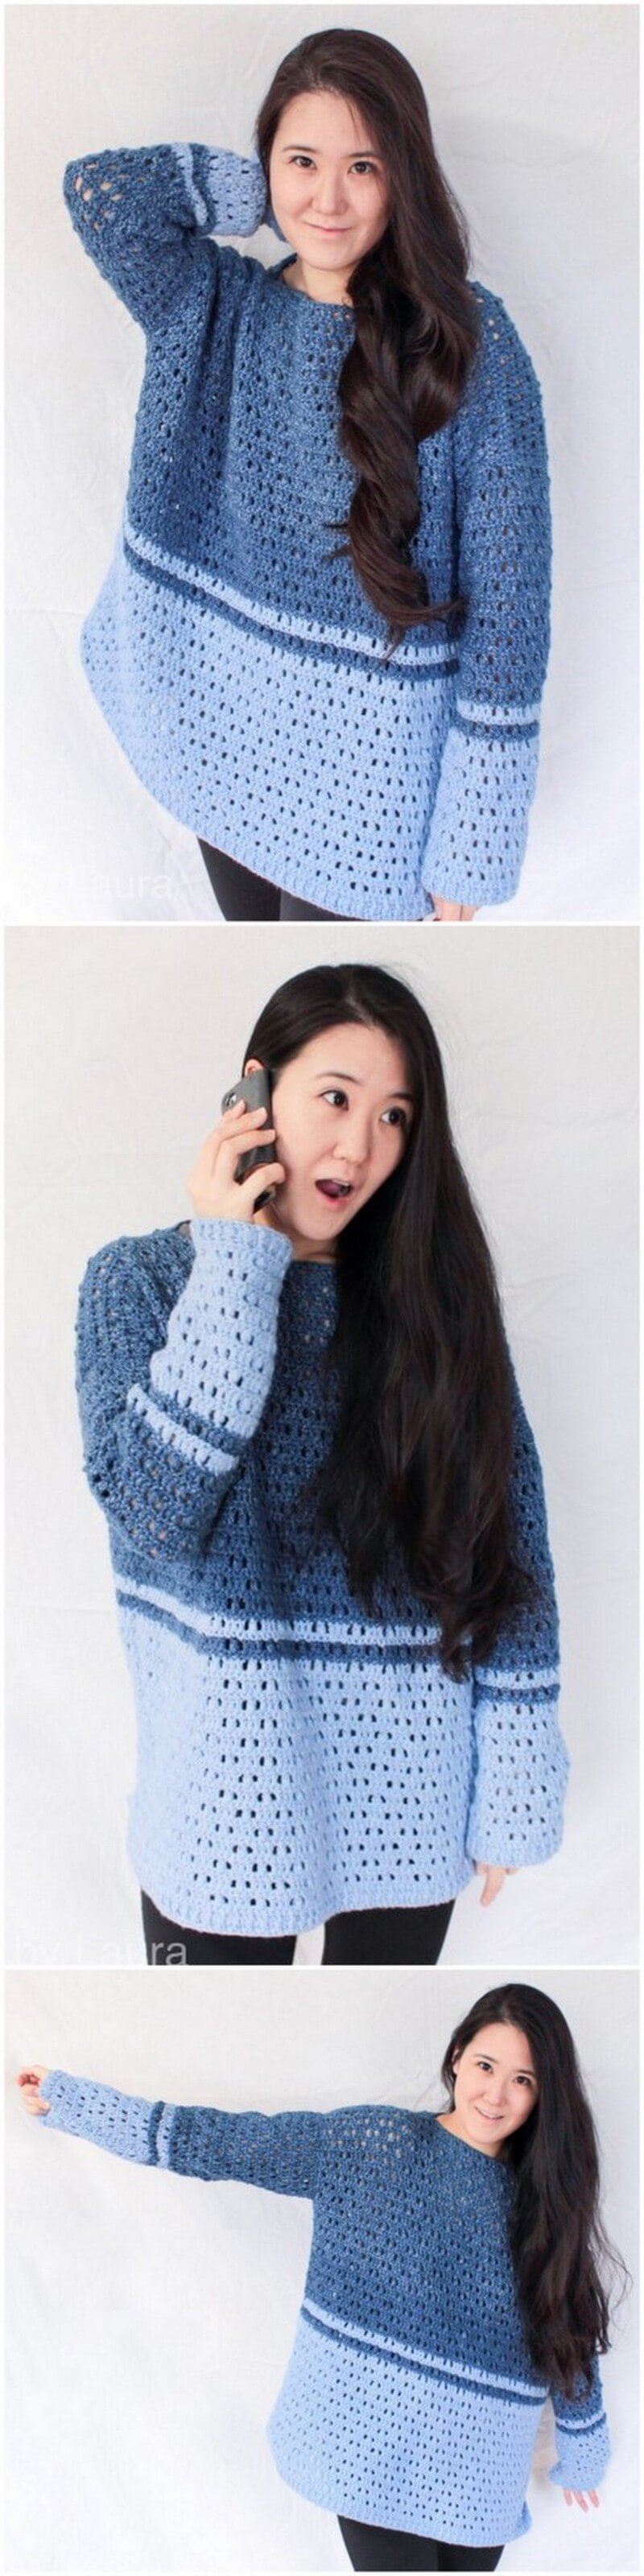 Crochet Sweater Pattern (26)